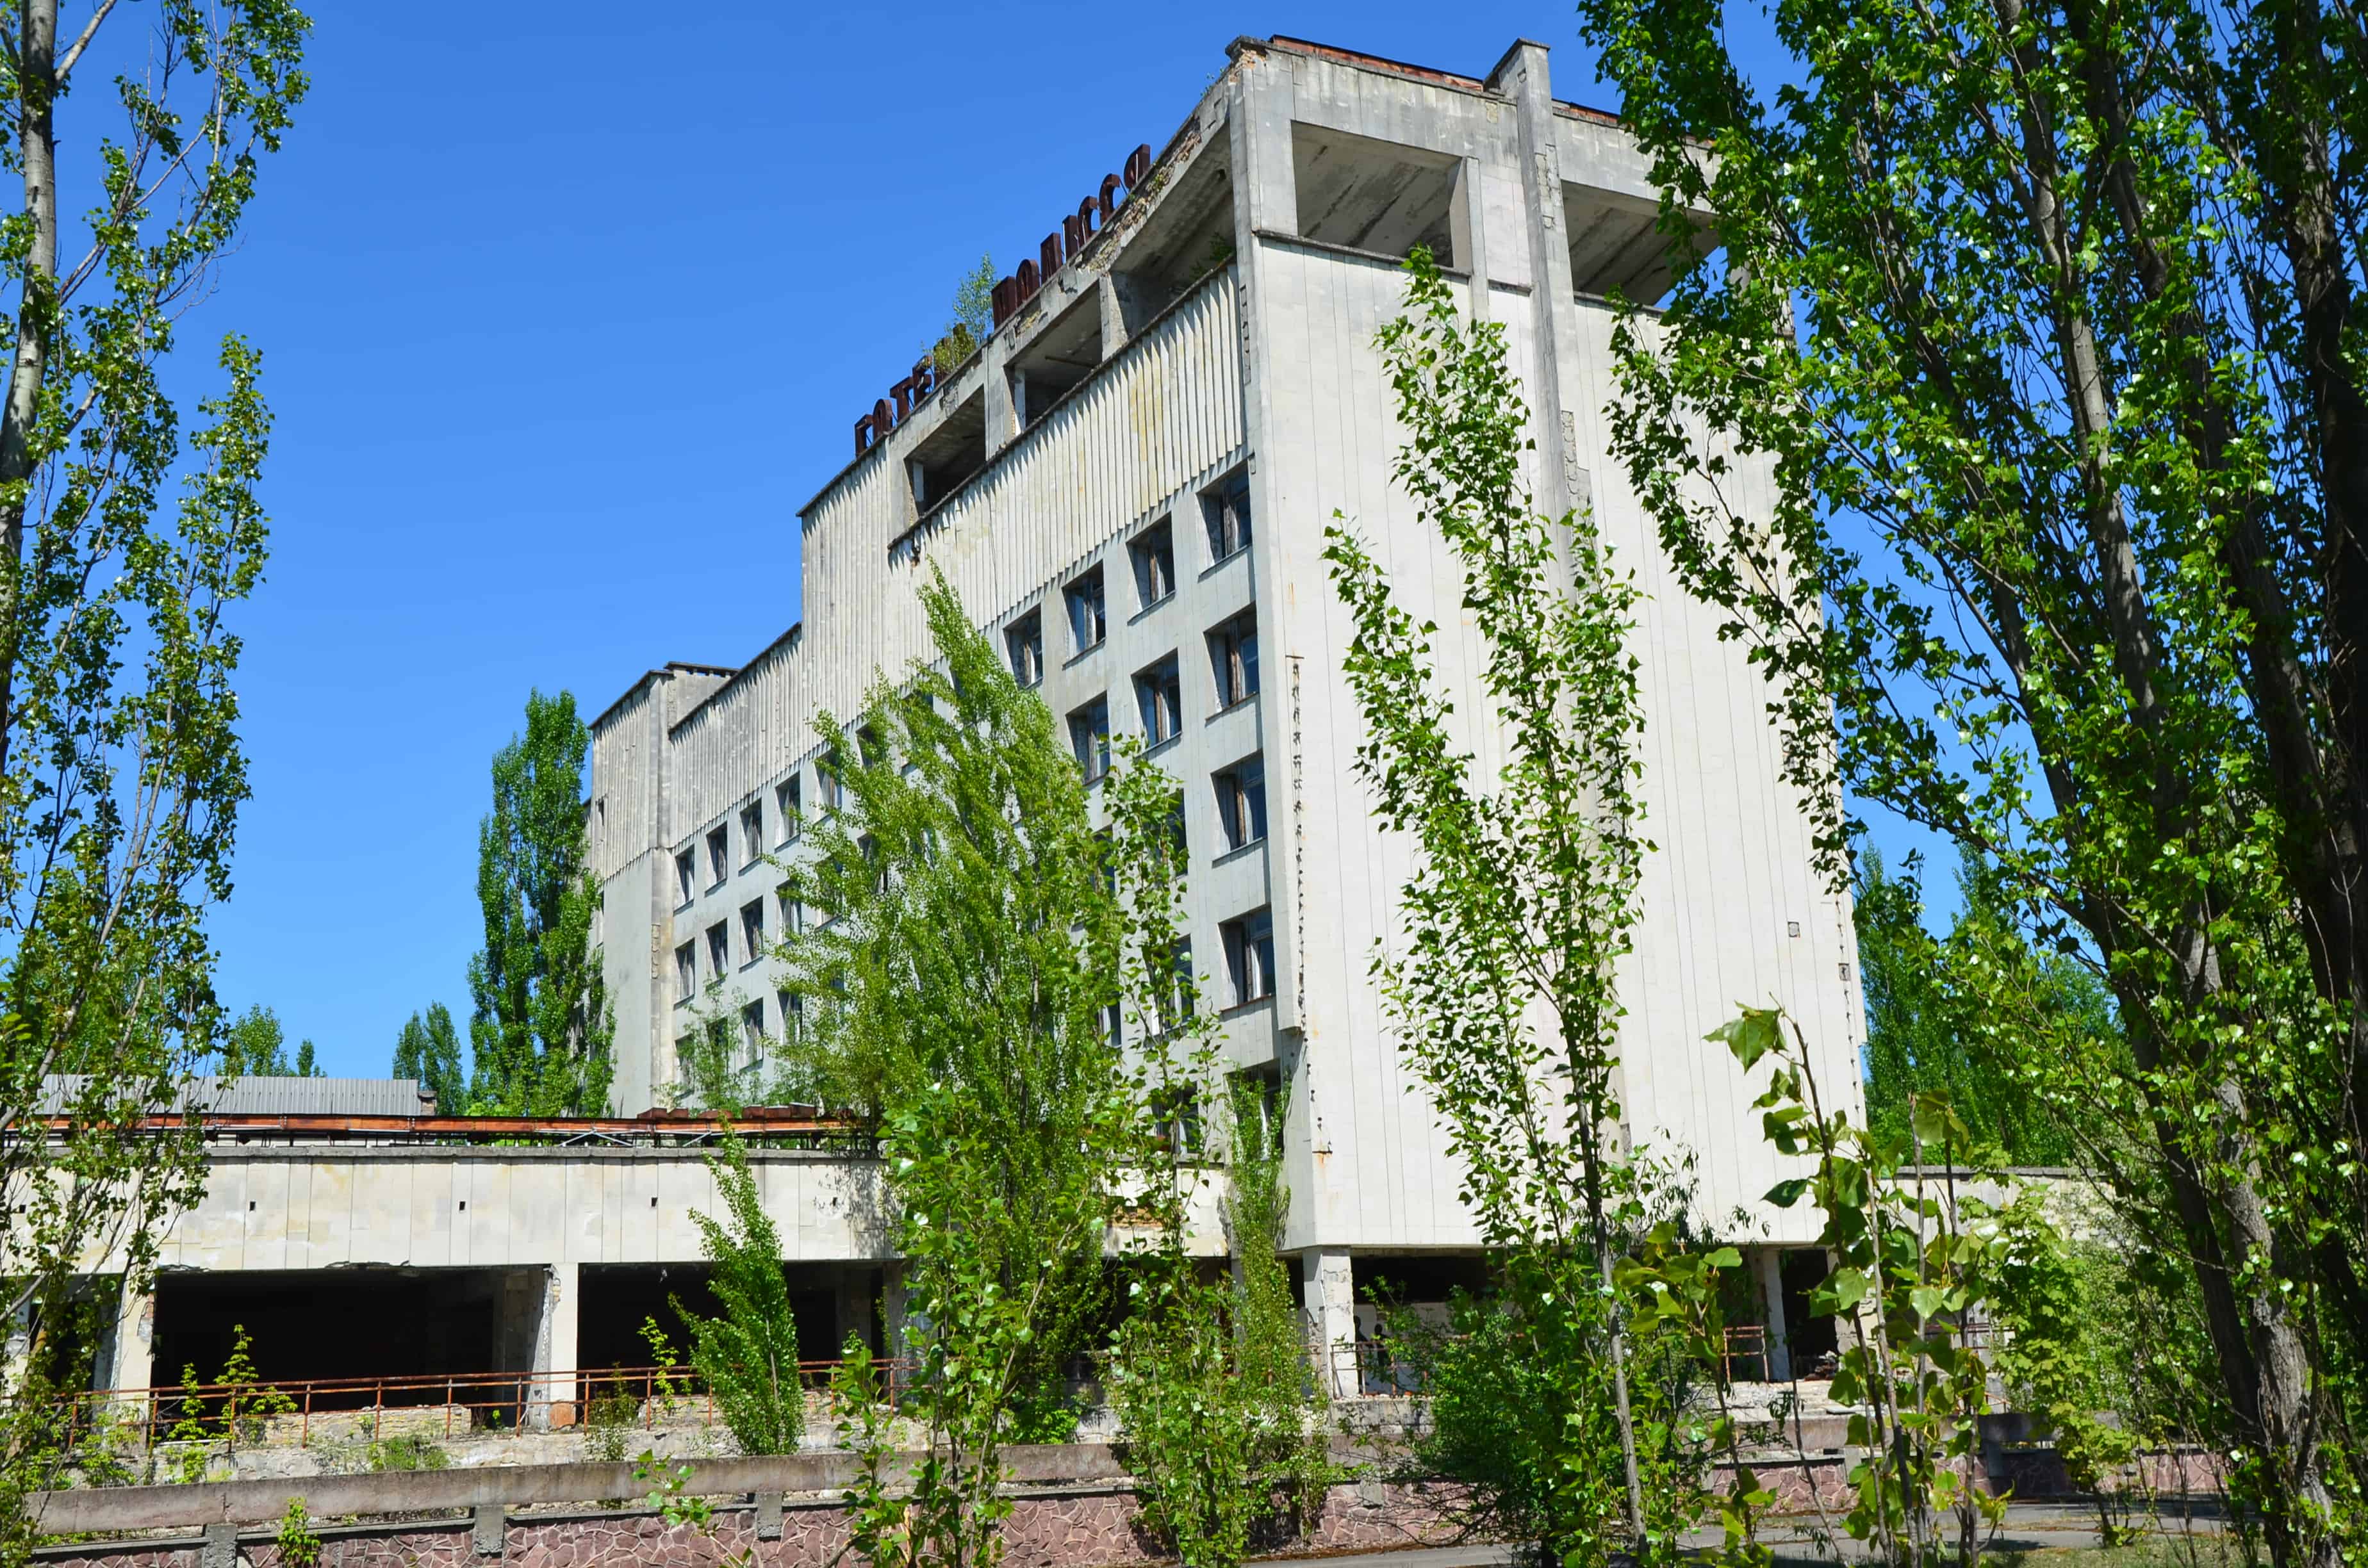 Hotel Polissya in Pripyat, Chernobyl Exclusion Zone, Ukraine